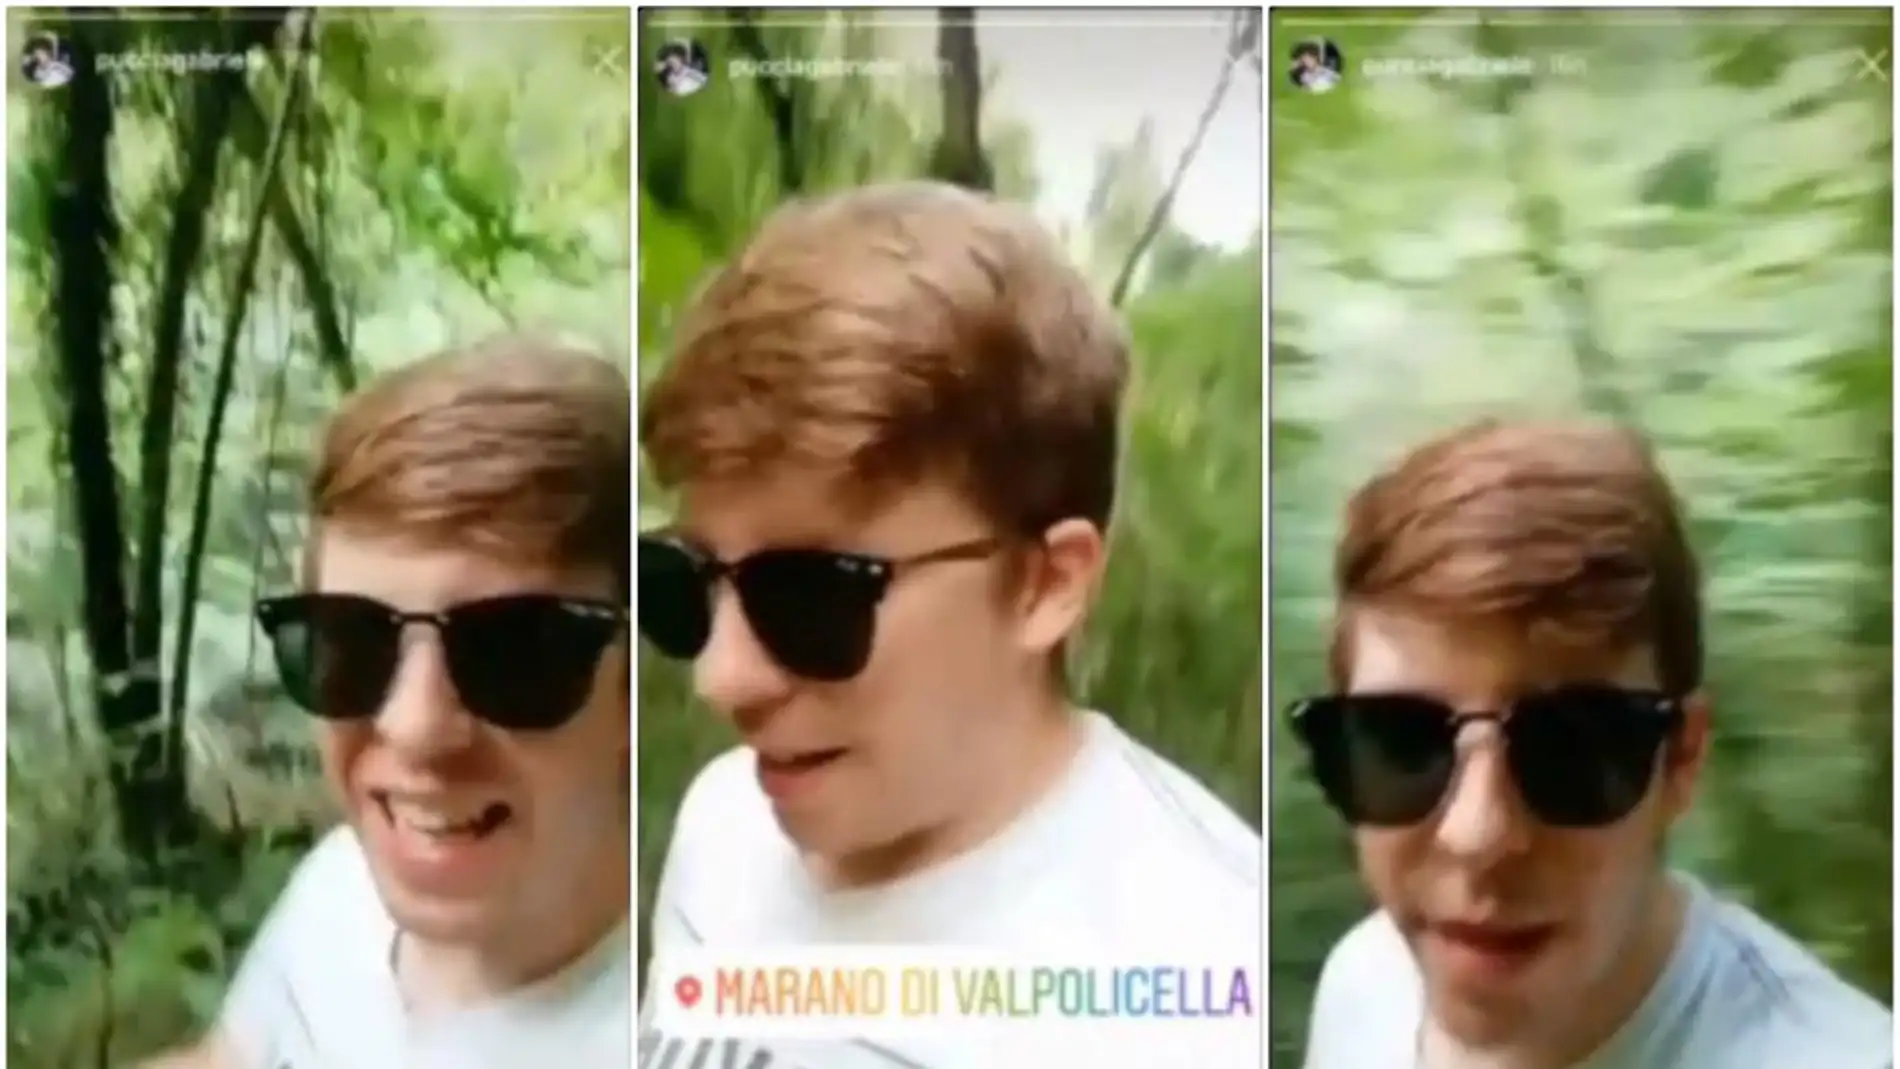 Gabriele Puccia grabando el vídeo que subió a Instagram